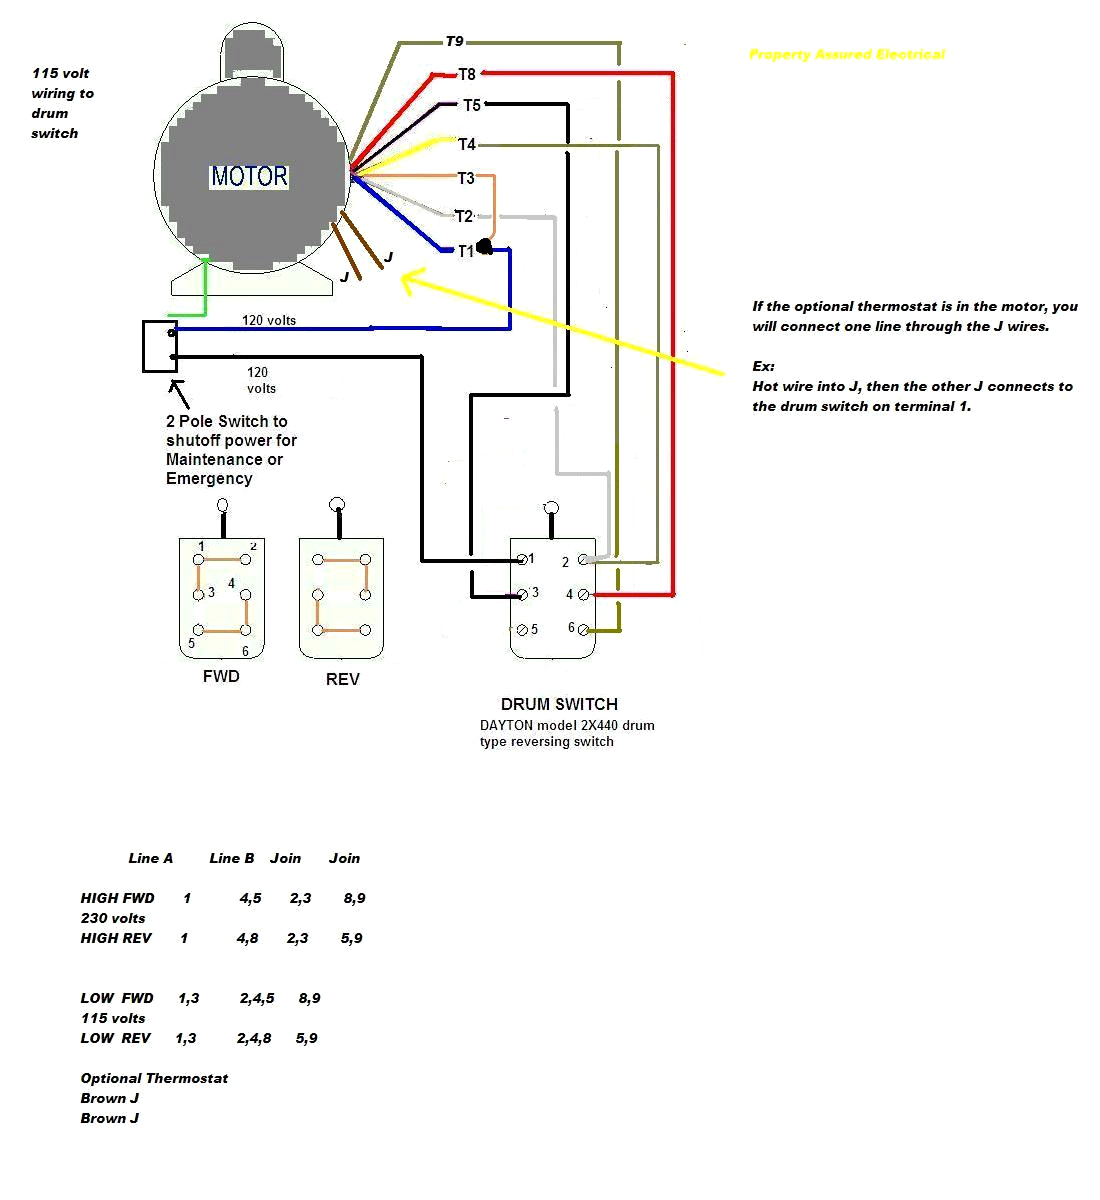 baldor 3 phase wiring diagram wiring diagram files baldor wiring diagram 3 phase baldor motor wiring